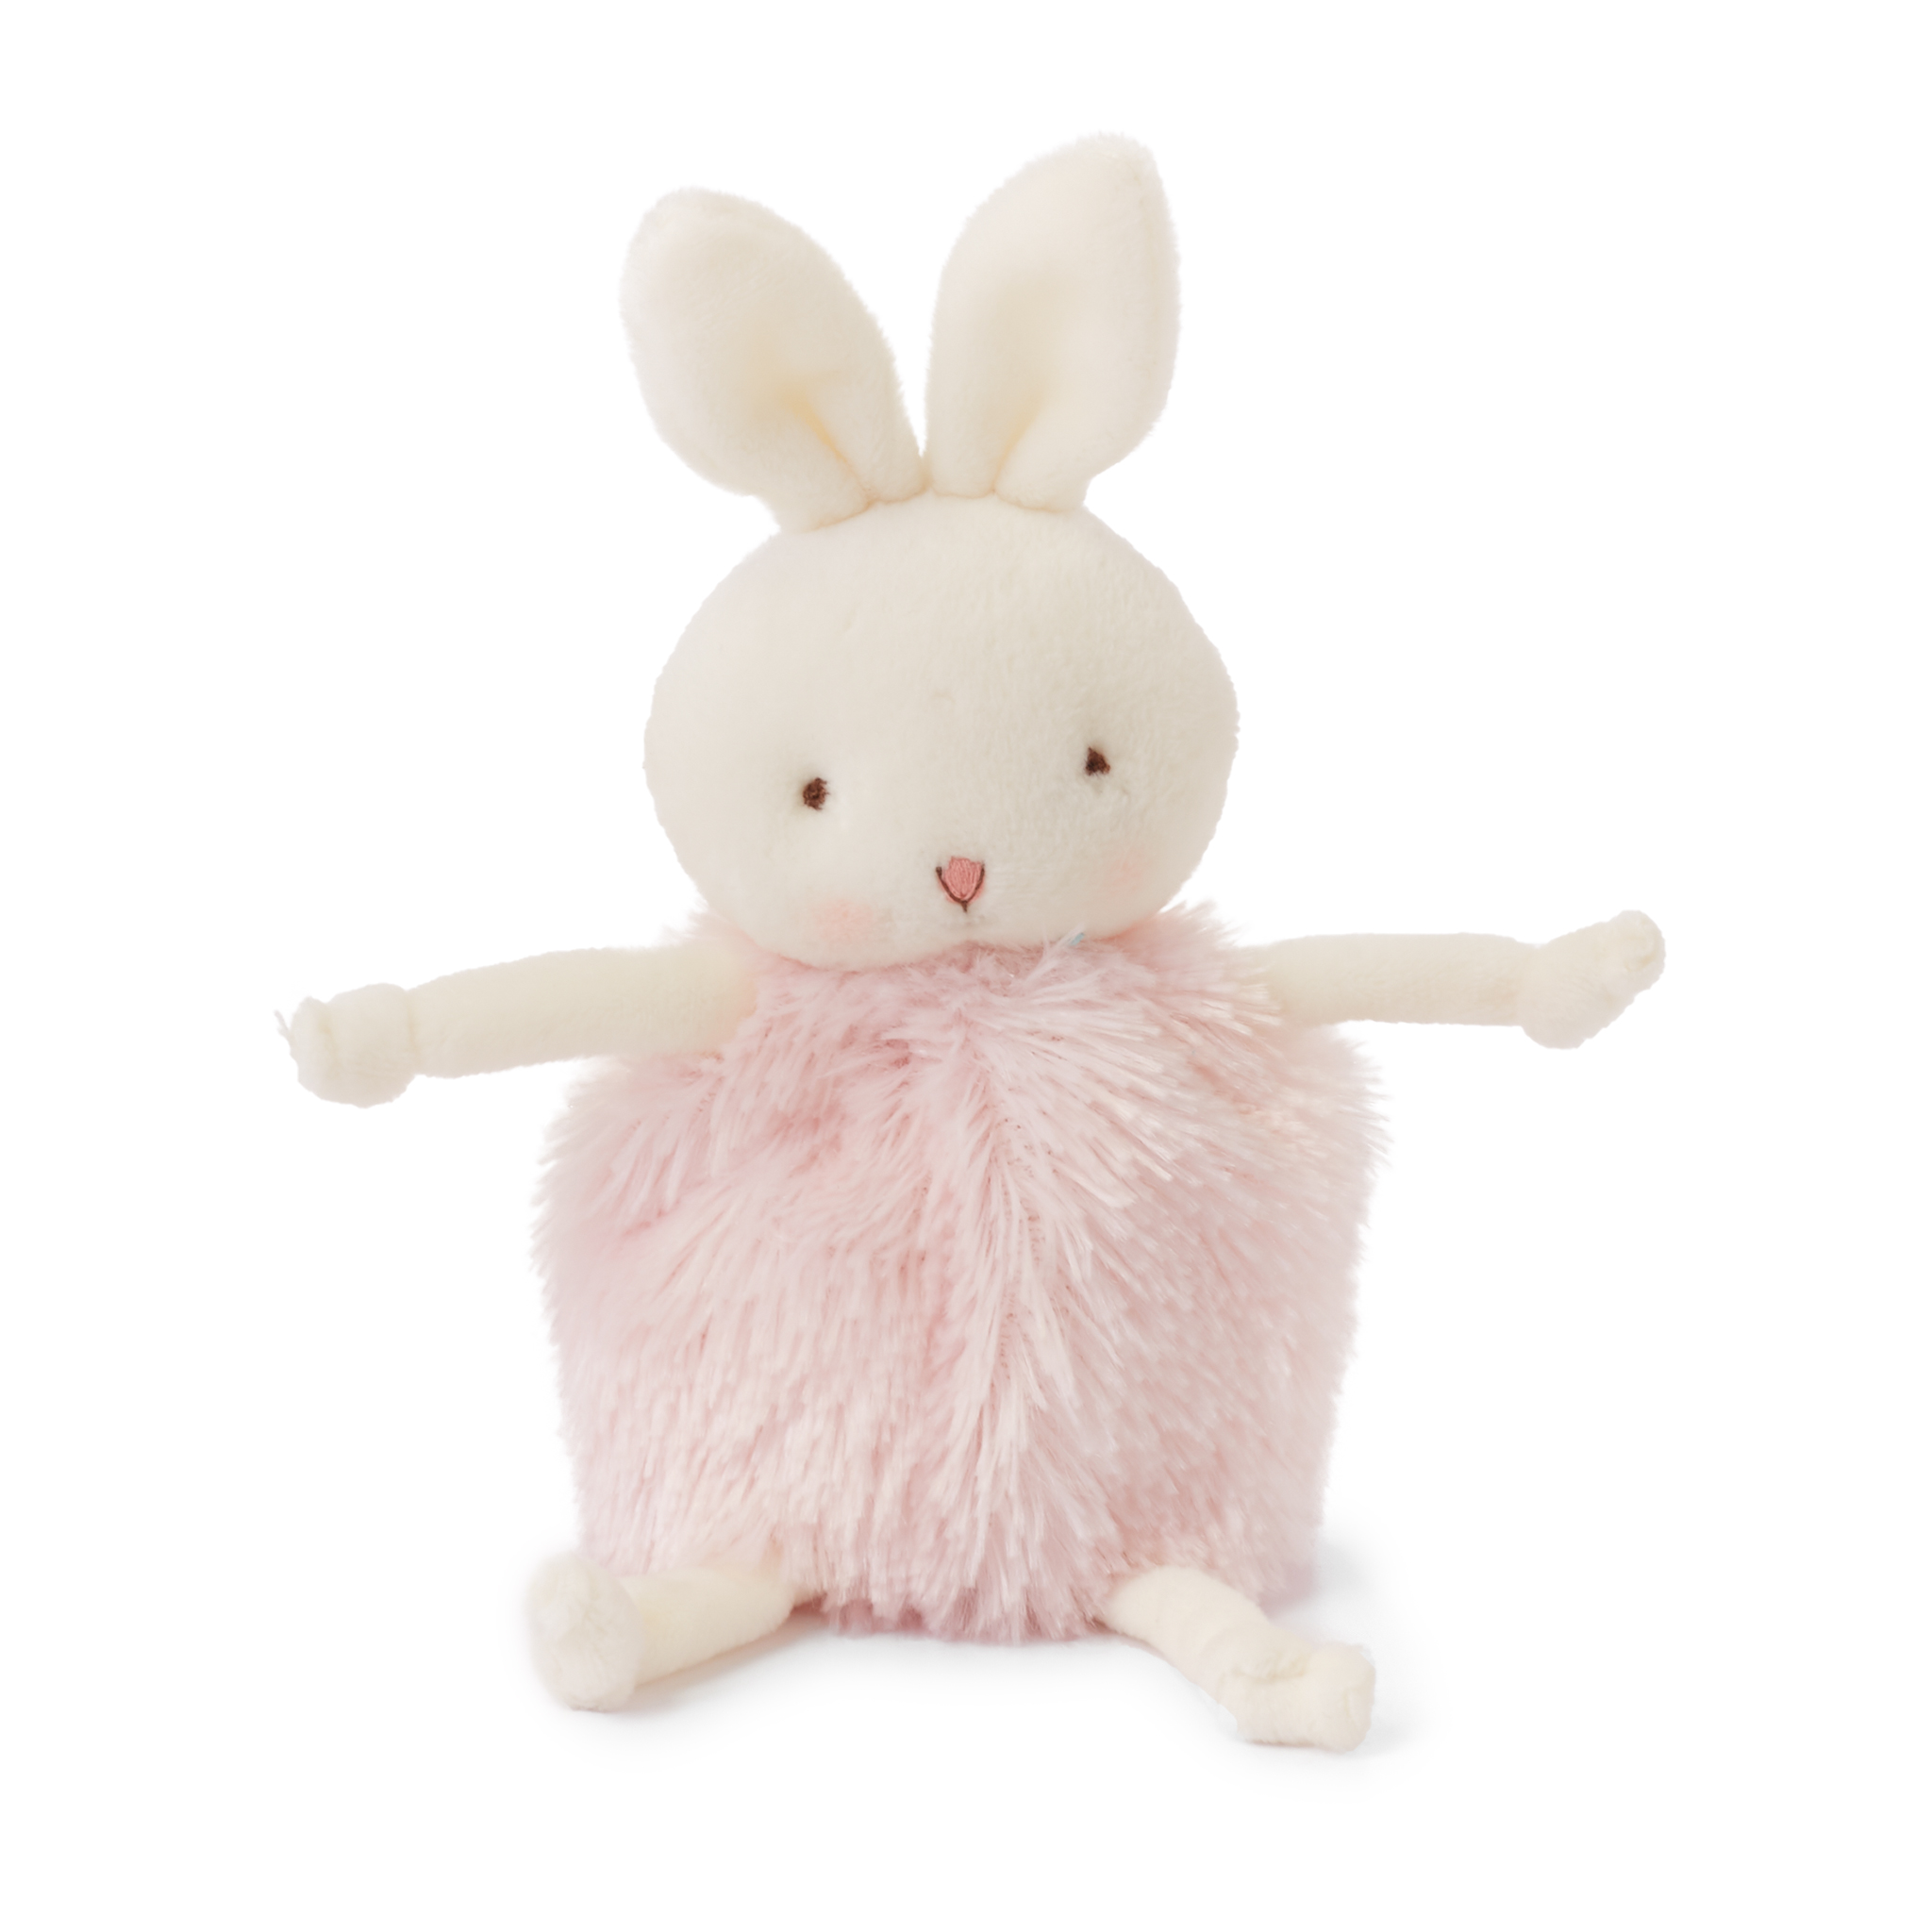 Roly-poly knuffel konijn - roze